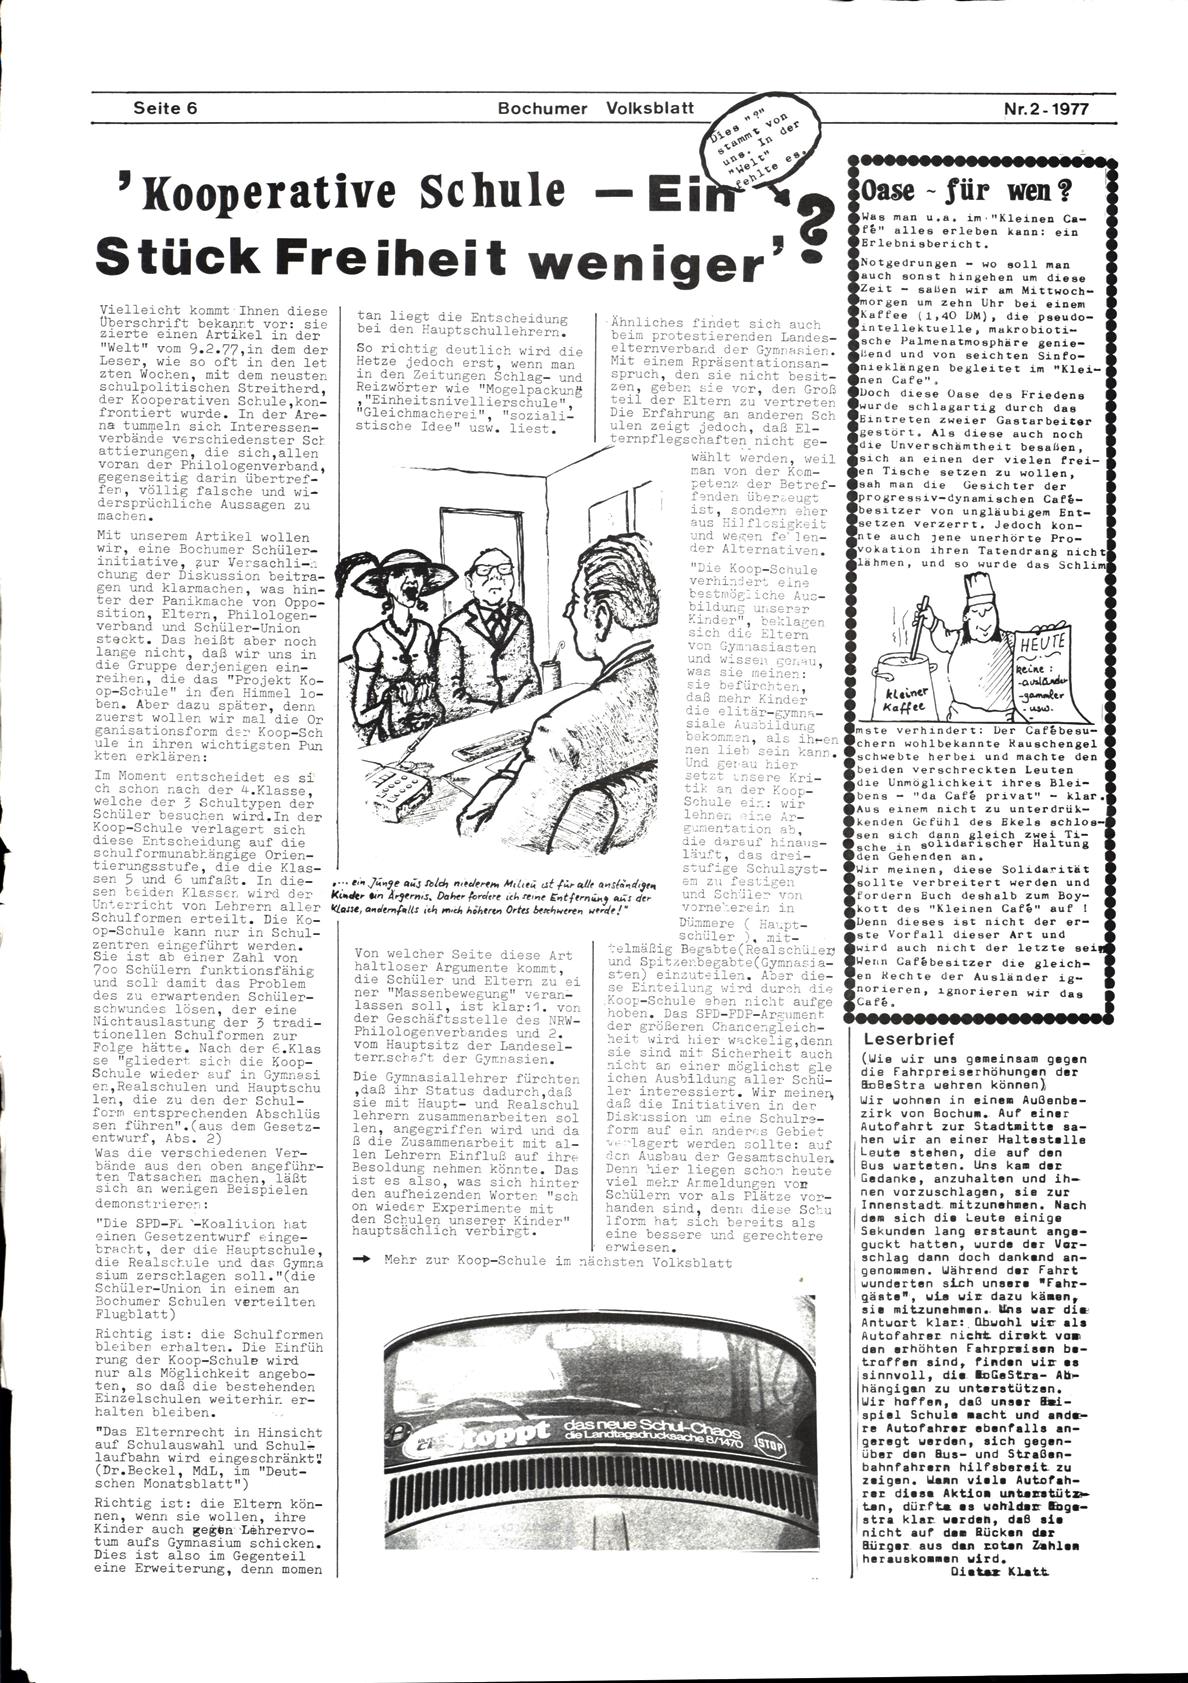 Bochum_Volksblatt_19770200_02_06